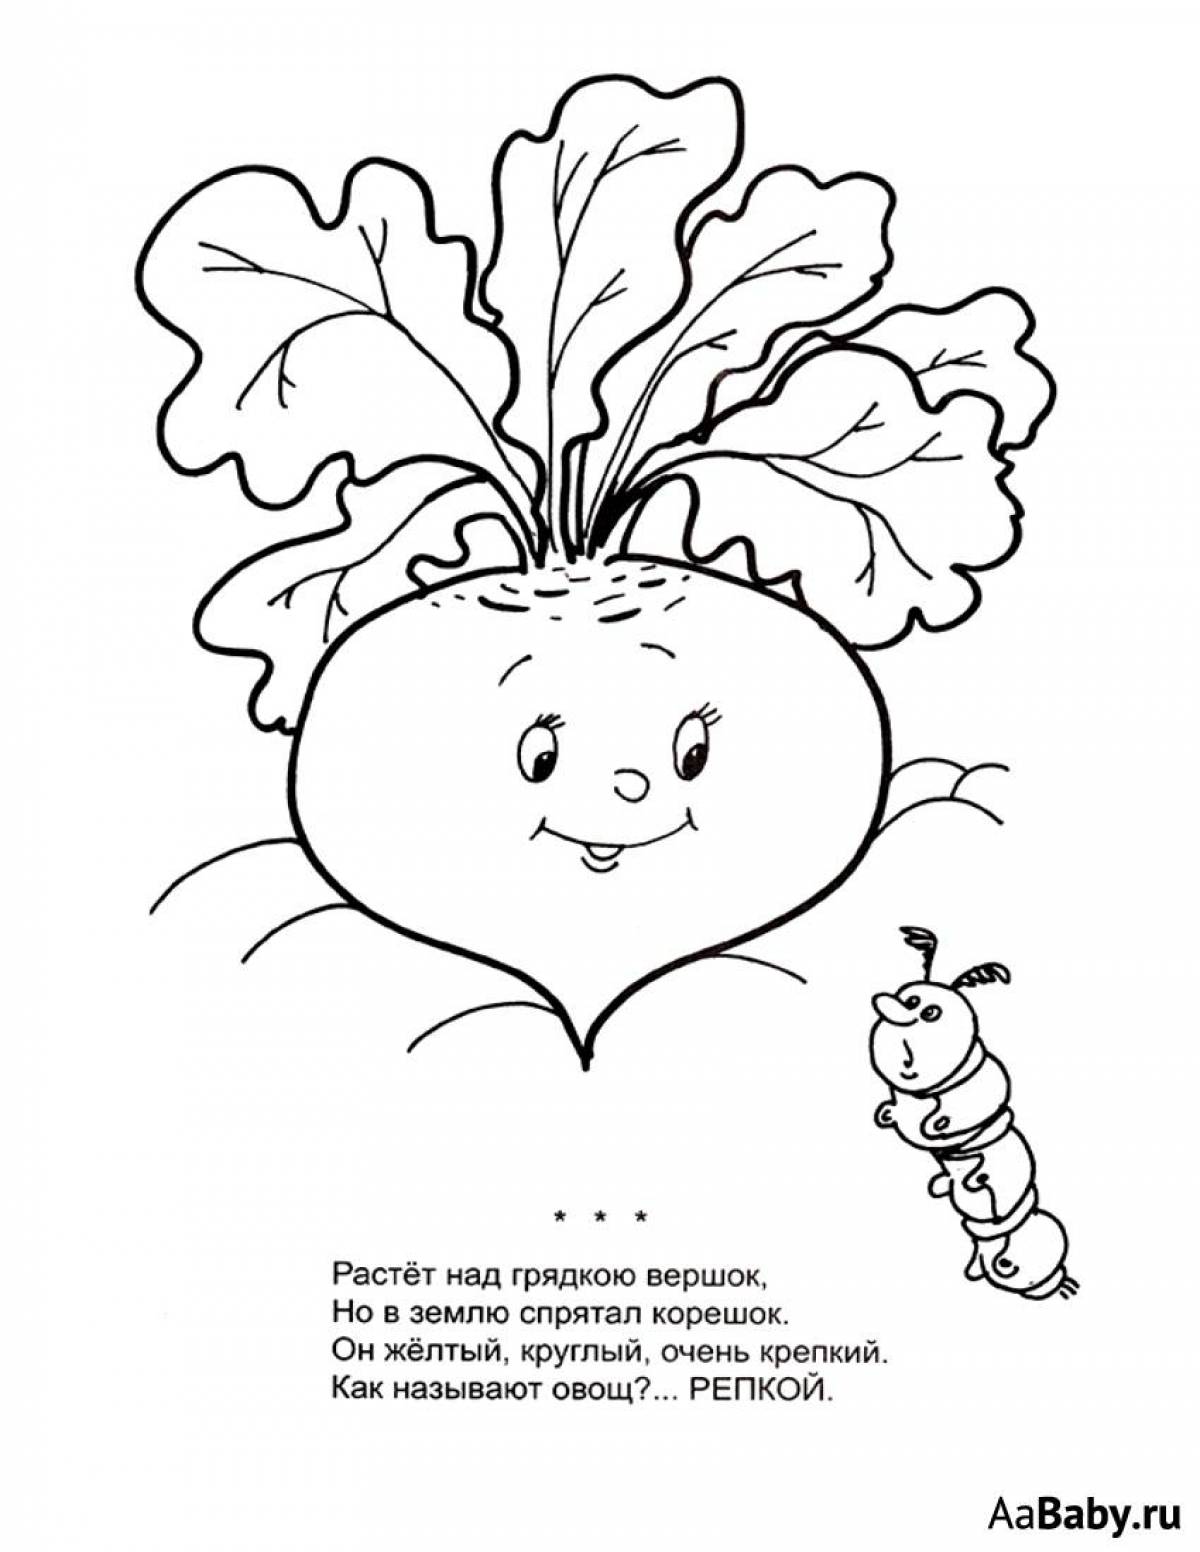 Children's turnip #4